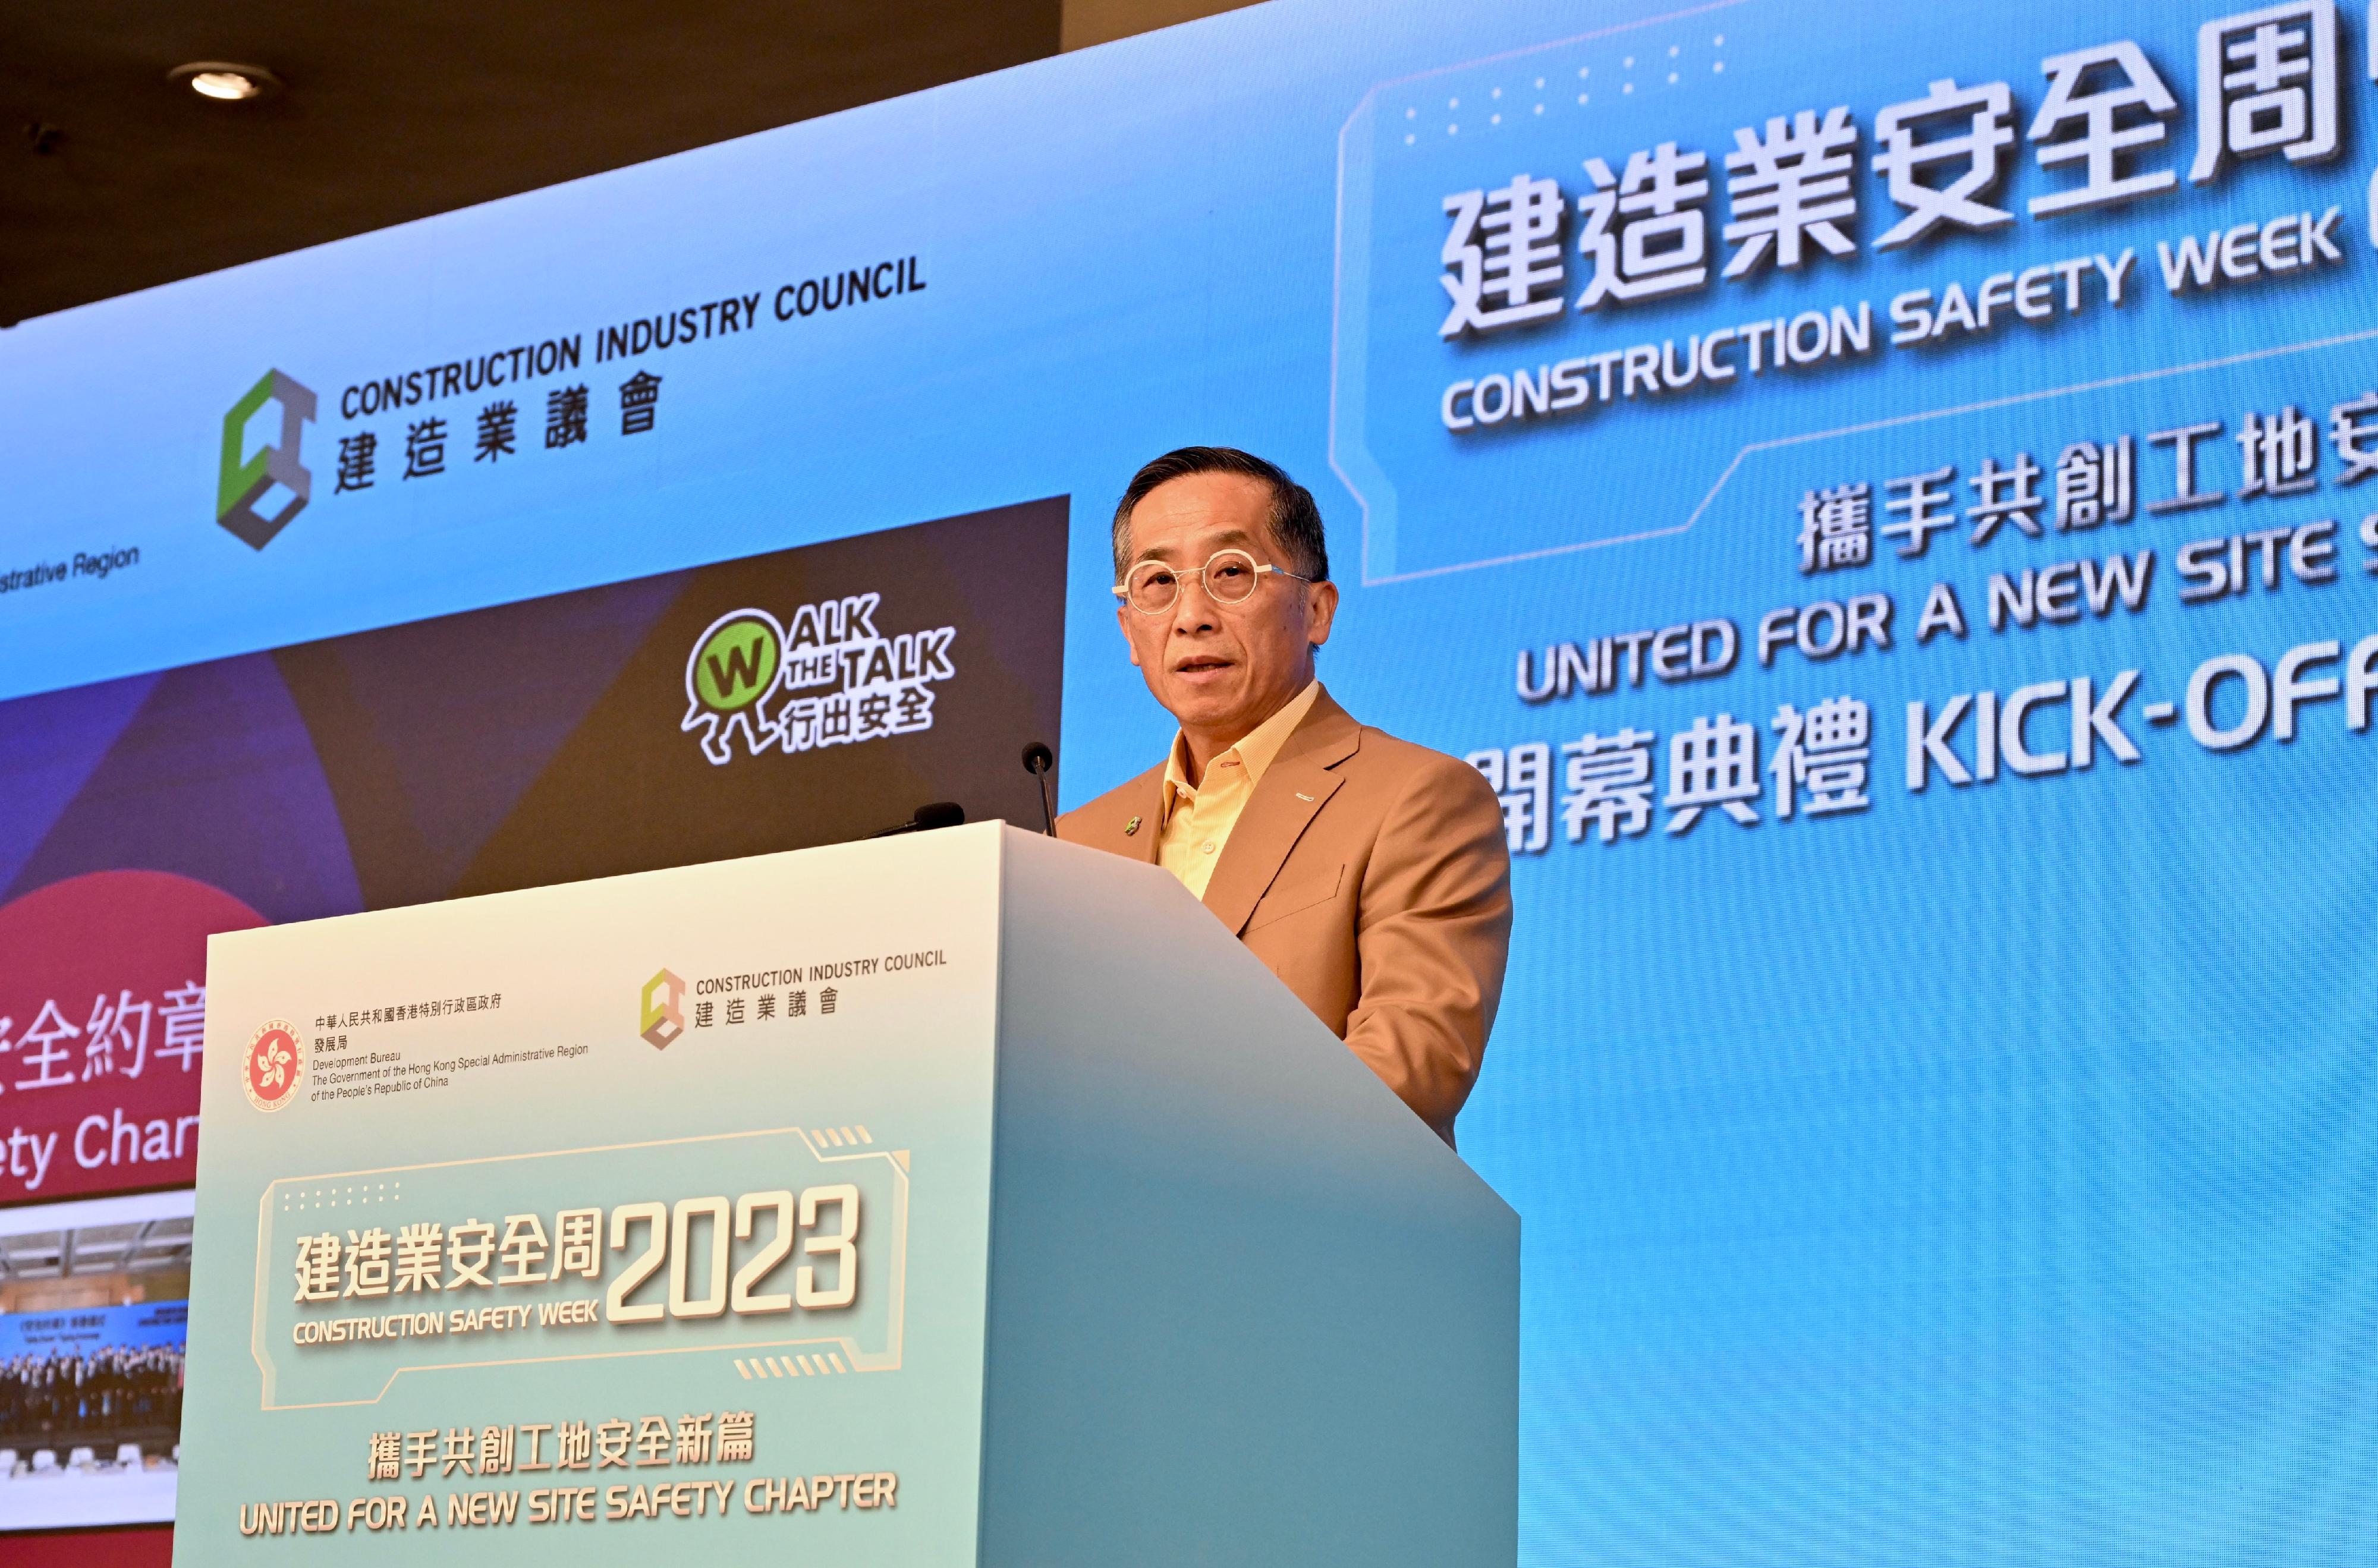 「建造业安全周2023」今日（八月二十八日）至九月三日举行。图示建造业议会主席何安诚在开幕典礼致辞。